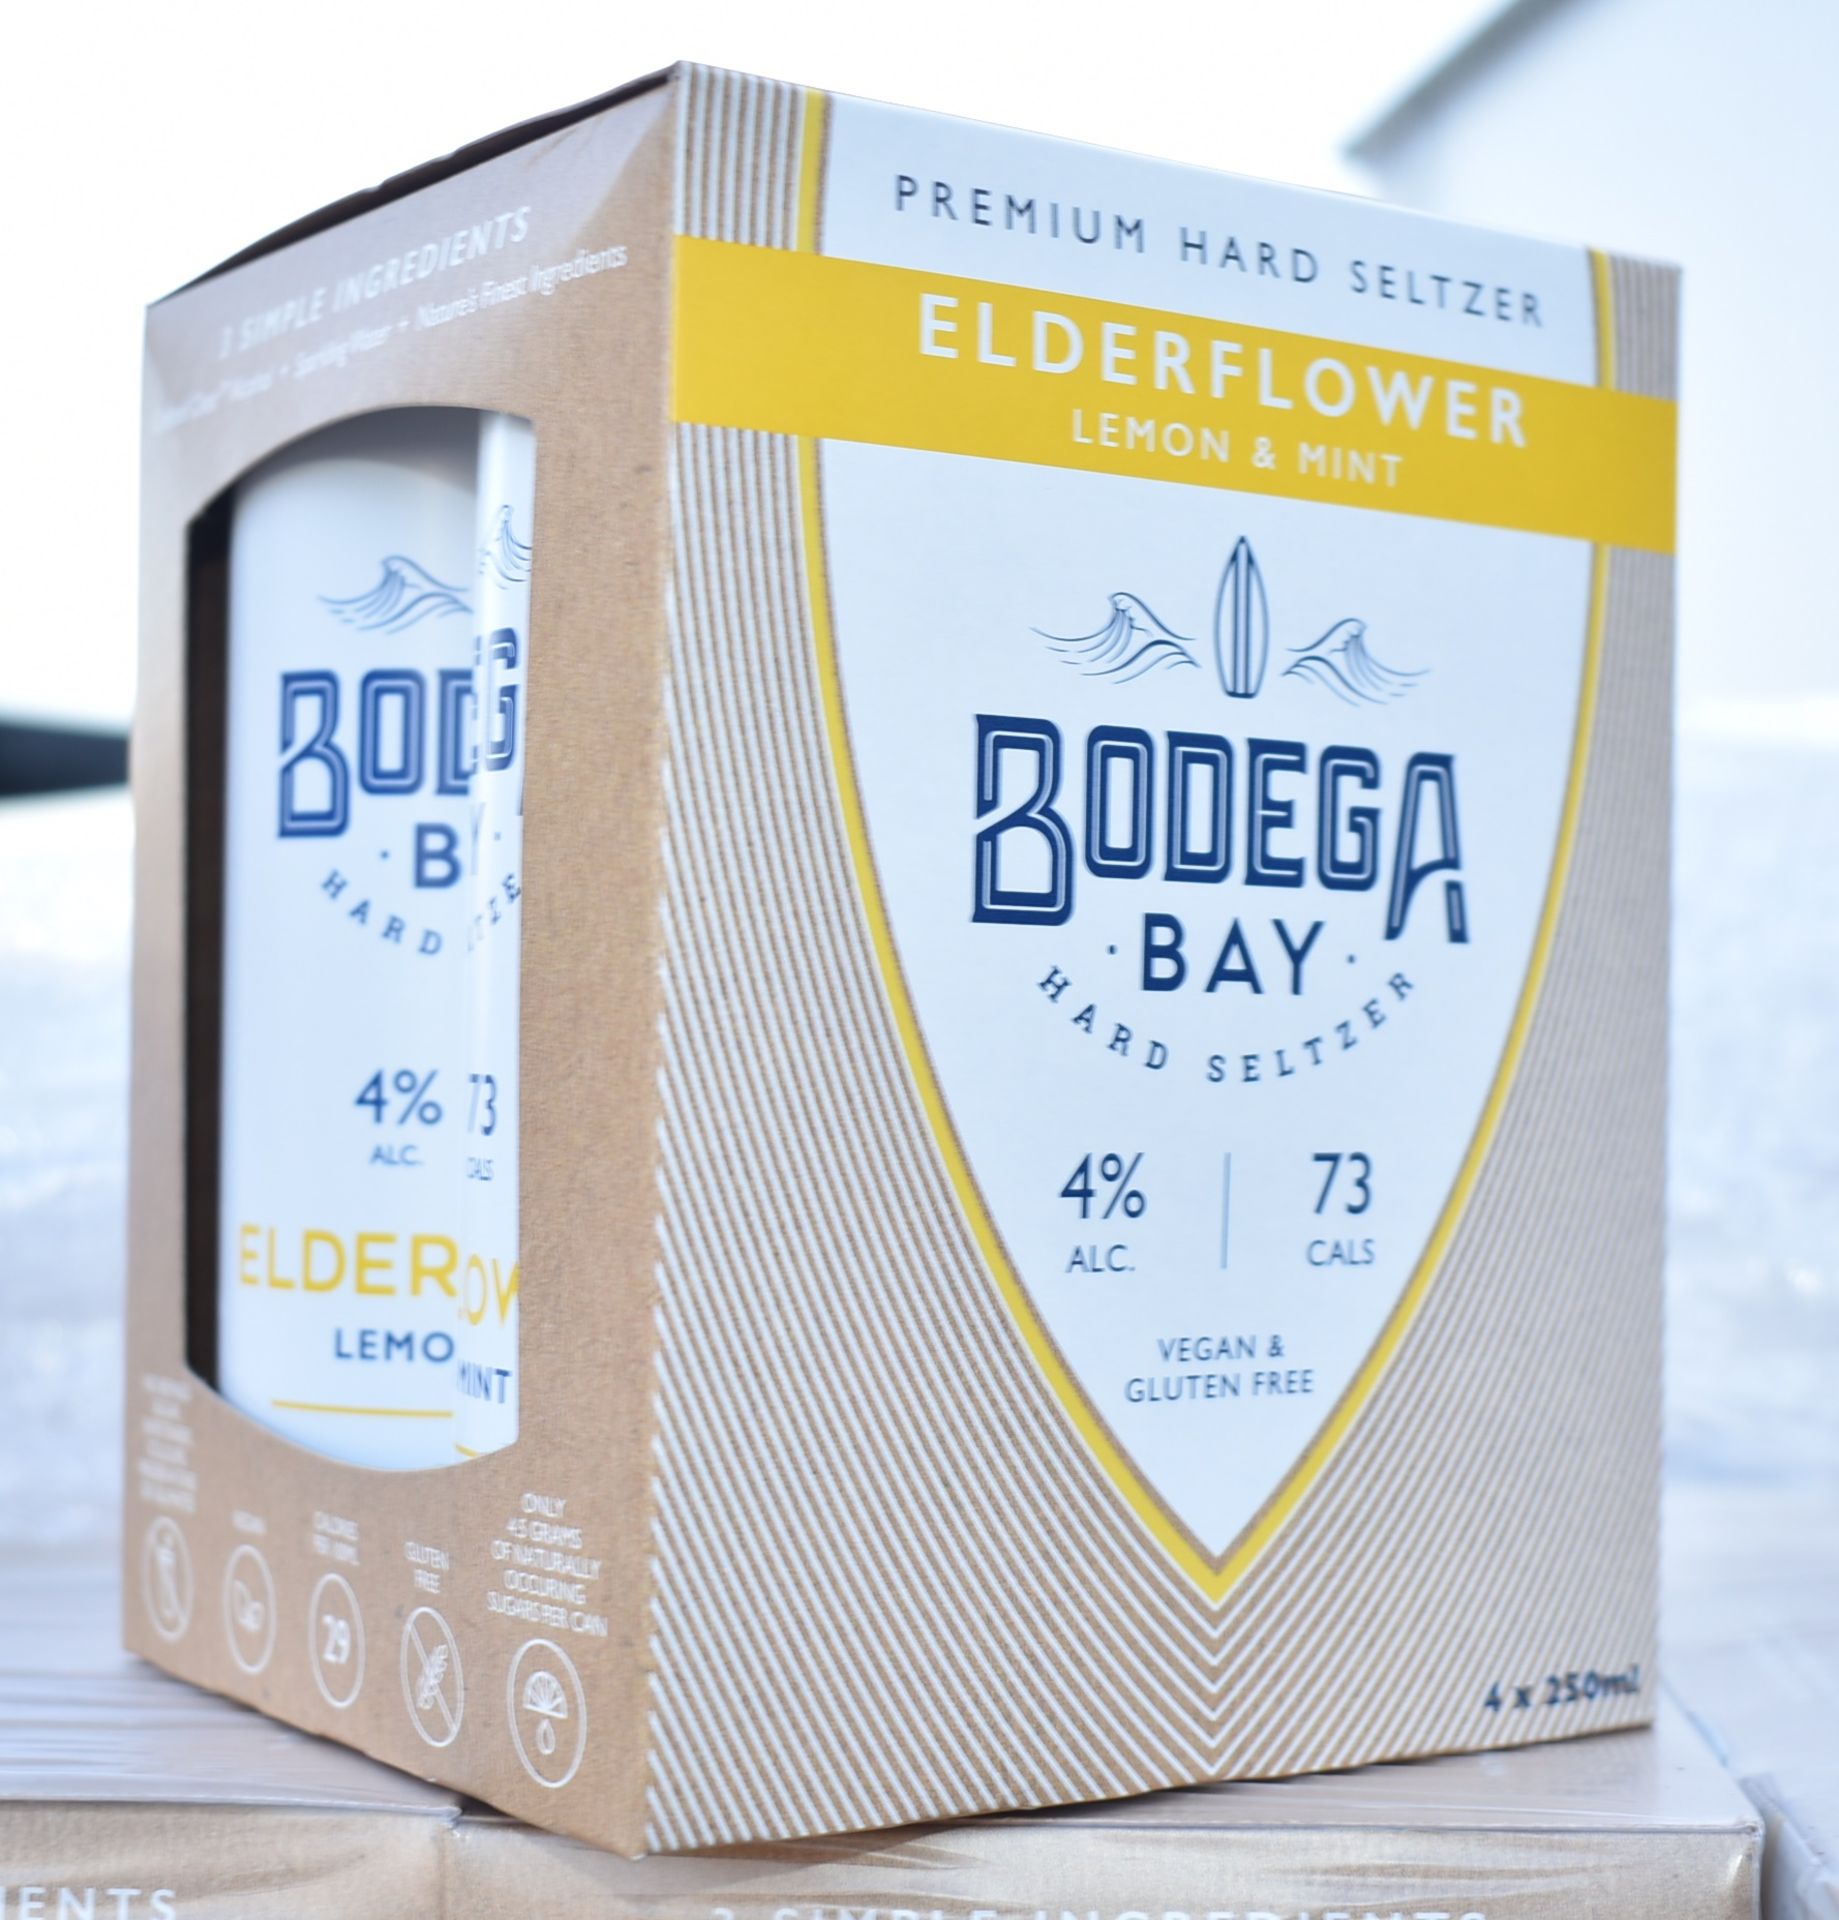 24 x Bodega Bay Hard Seltzer 250ml Alcoholic Sparkling Water Drinks - Elderflower Lemon & Mint - - Image 3 of 7